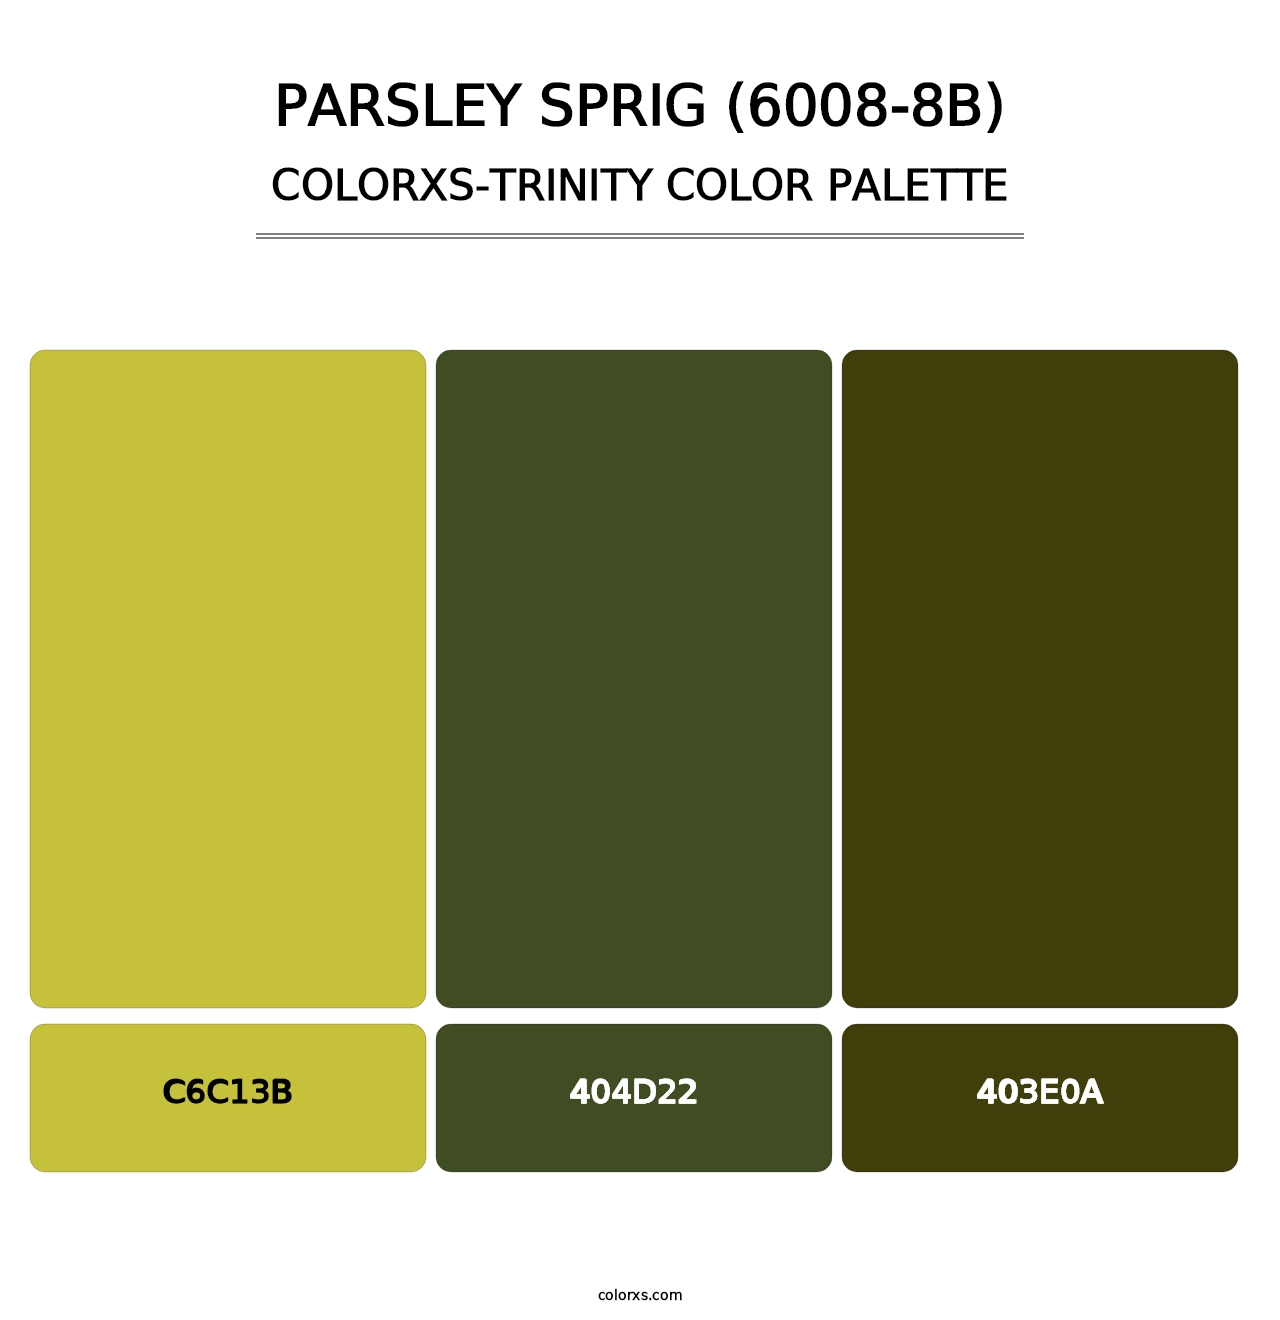 Parsley Sprig (6008-8B) - Colorxs Trinity Palette